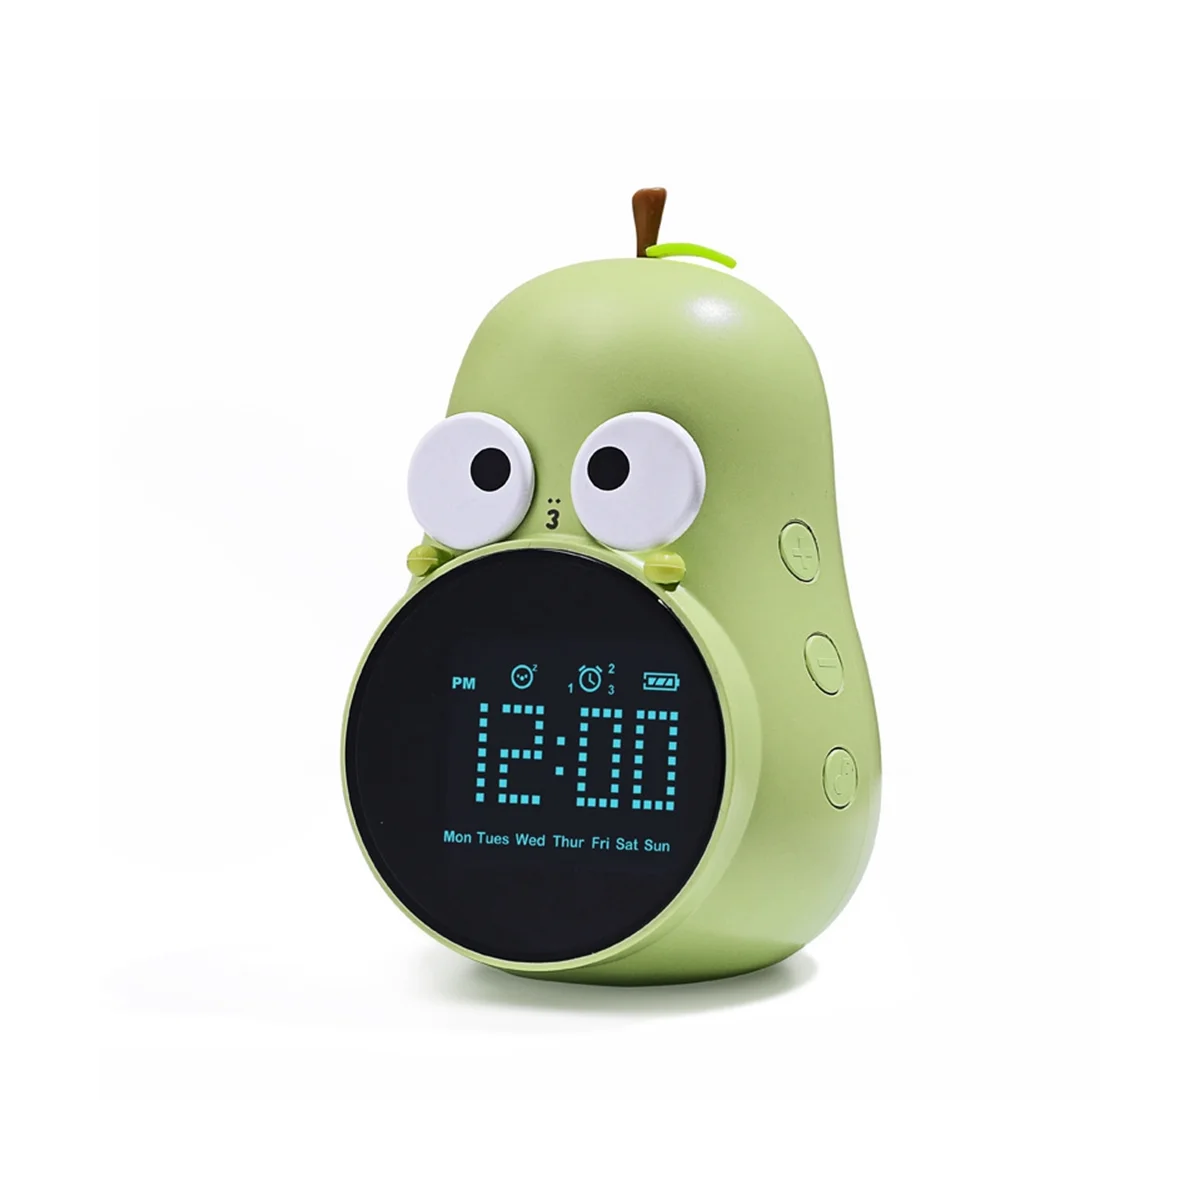 

Будильник для детей с милым дизайном в виде груши, Повтор сигнала, три будильника, 5 мелодий звонка-цифровые часы для пробуждения, перезаряжаемые зеленые